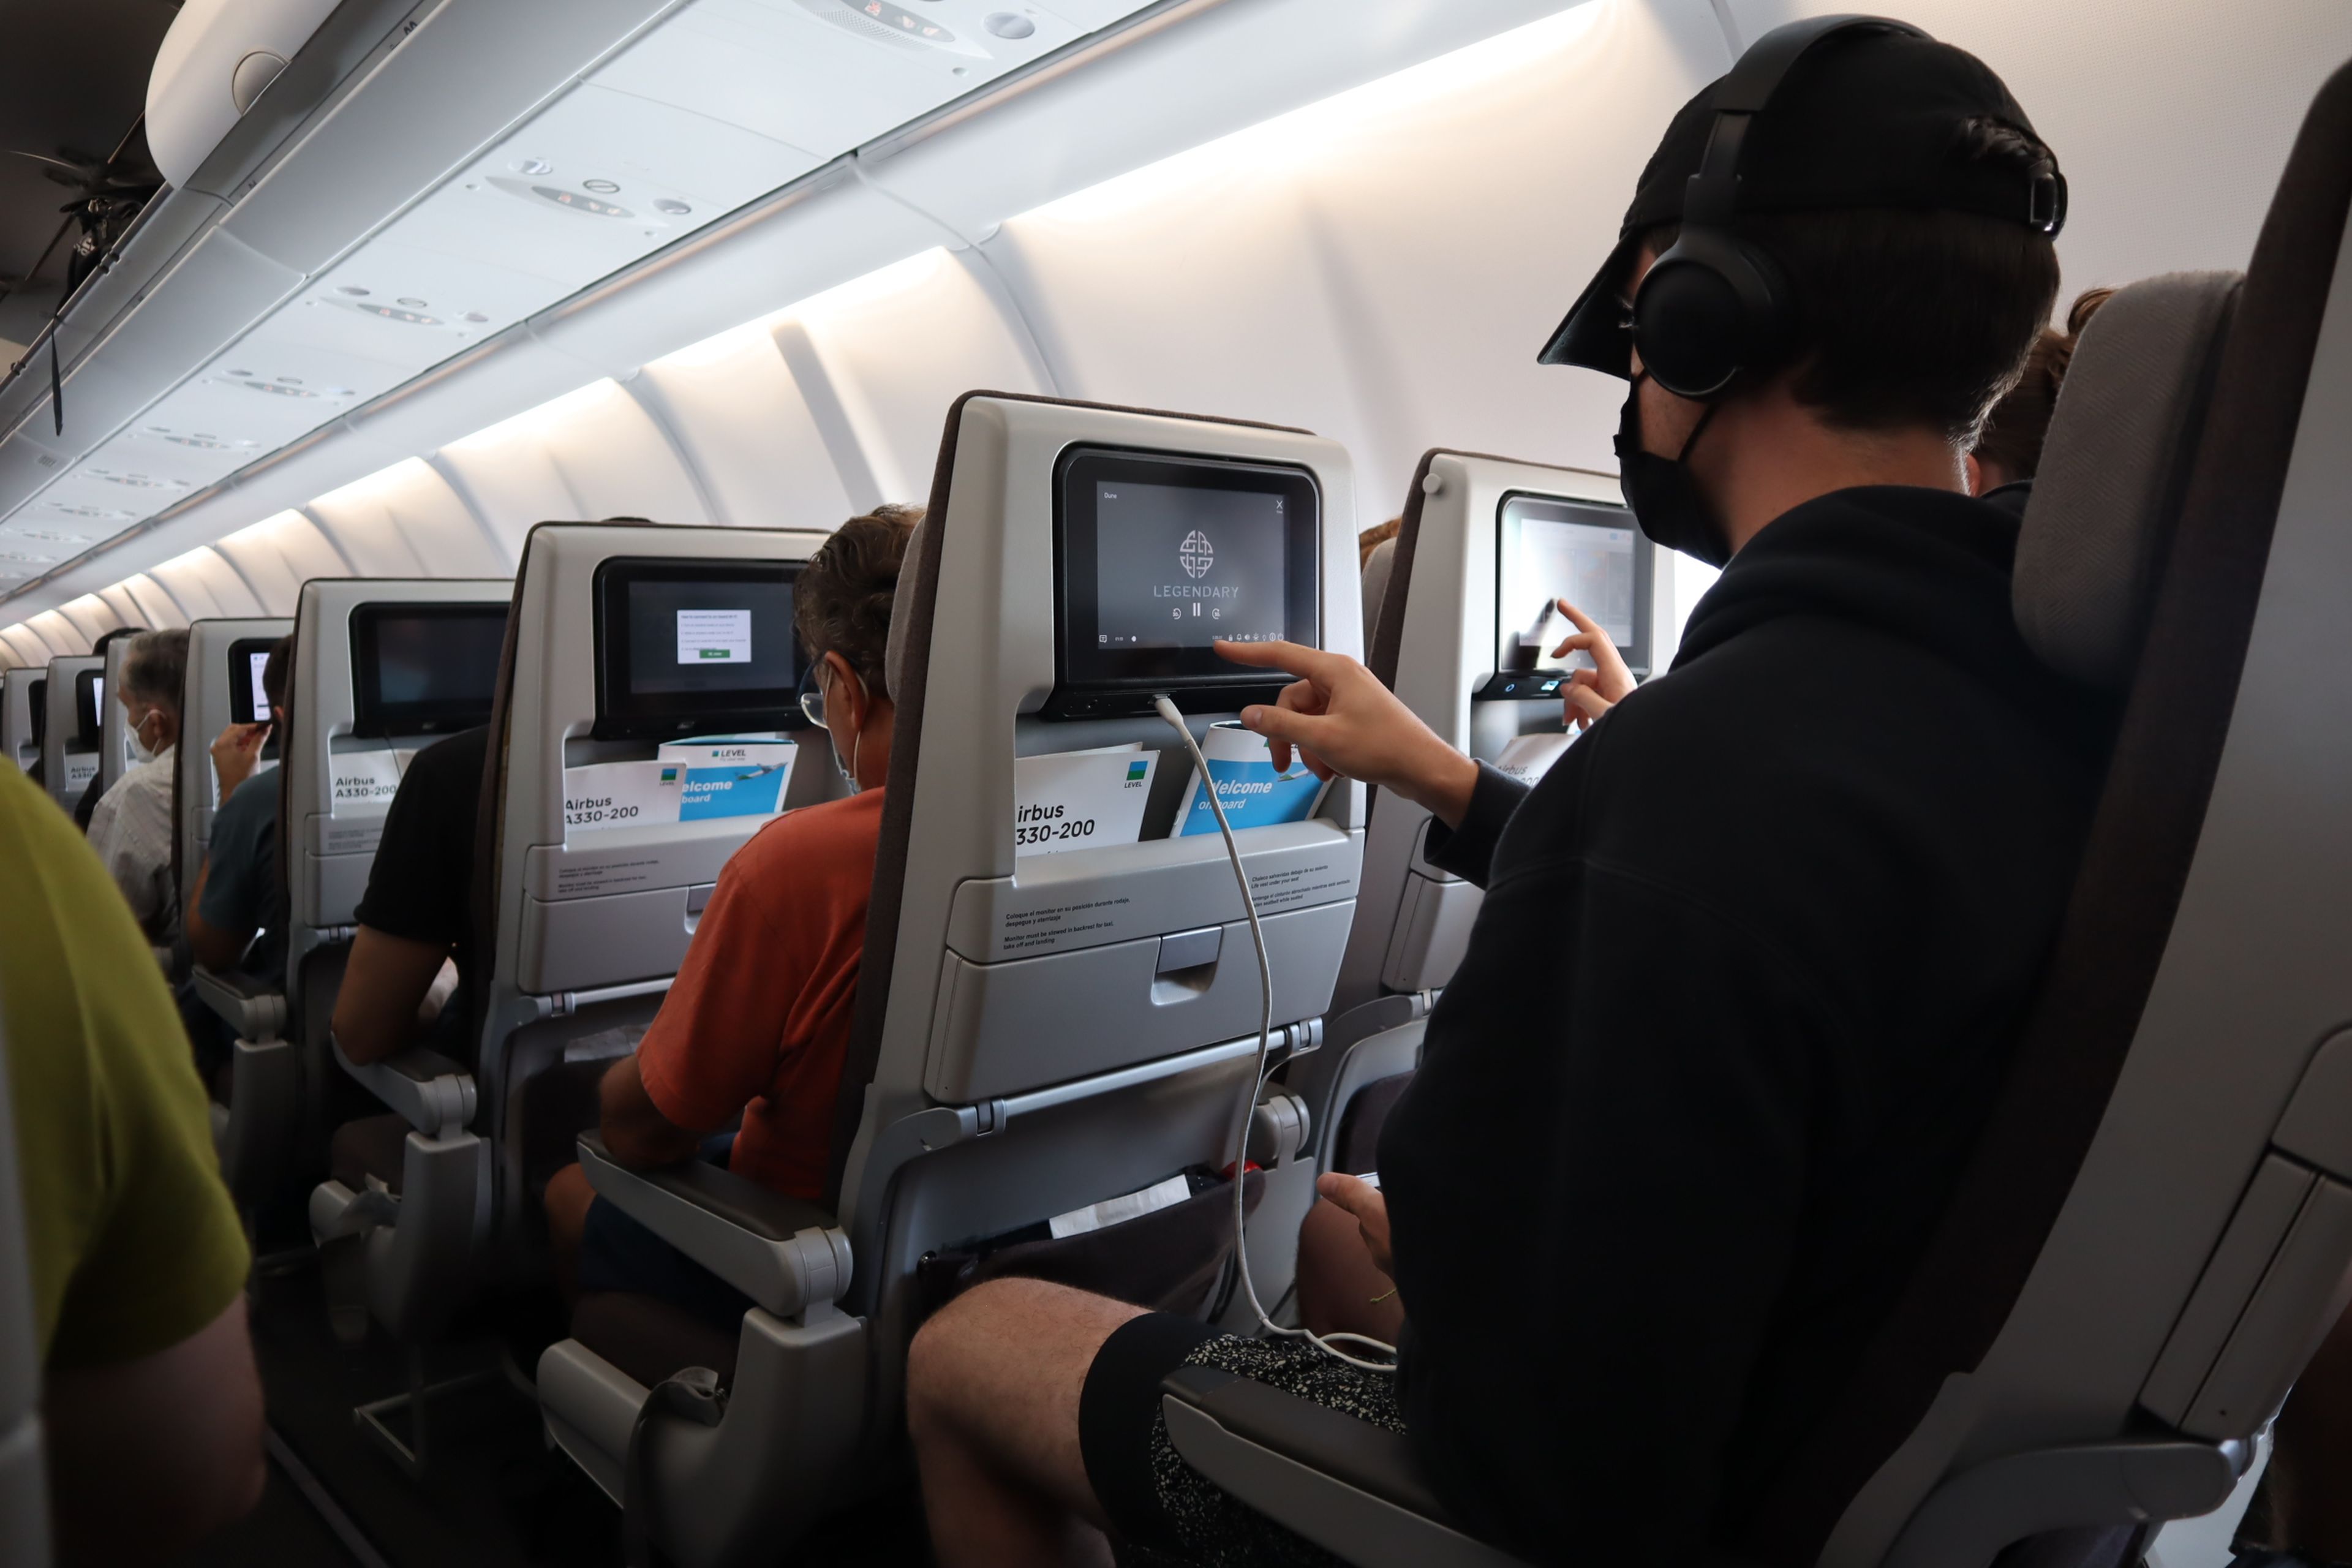 En el avión Airbus A300-200 puedes pedir comidas y bebidas del bar directamente de las pantallas.